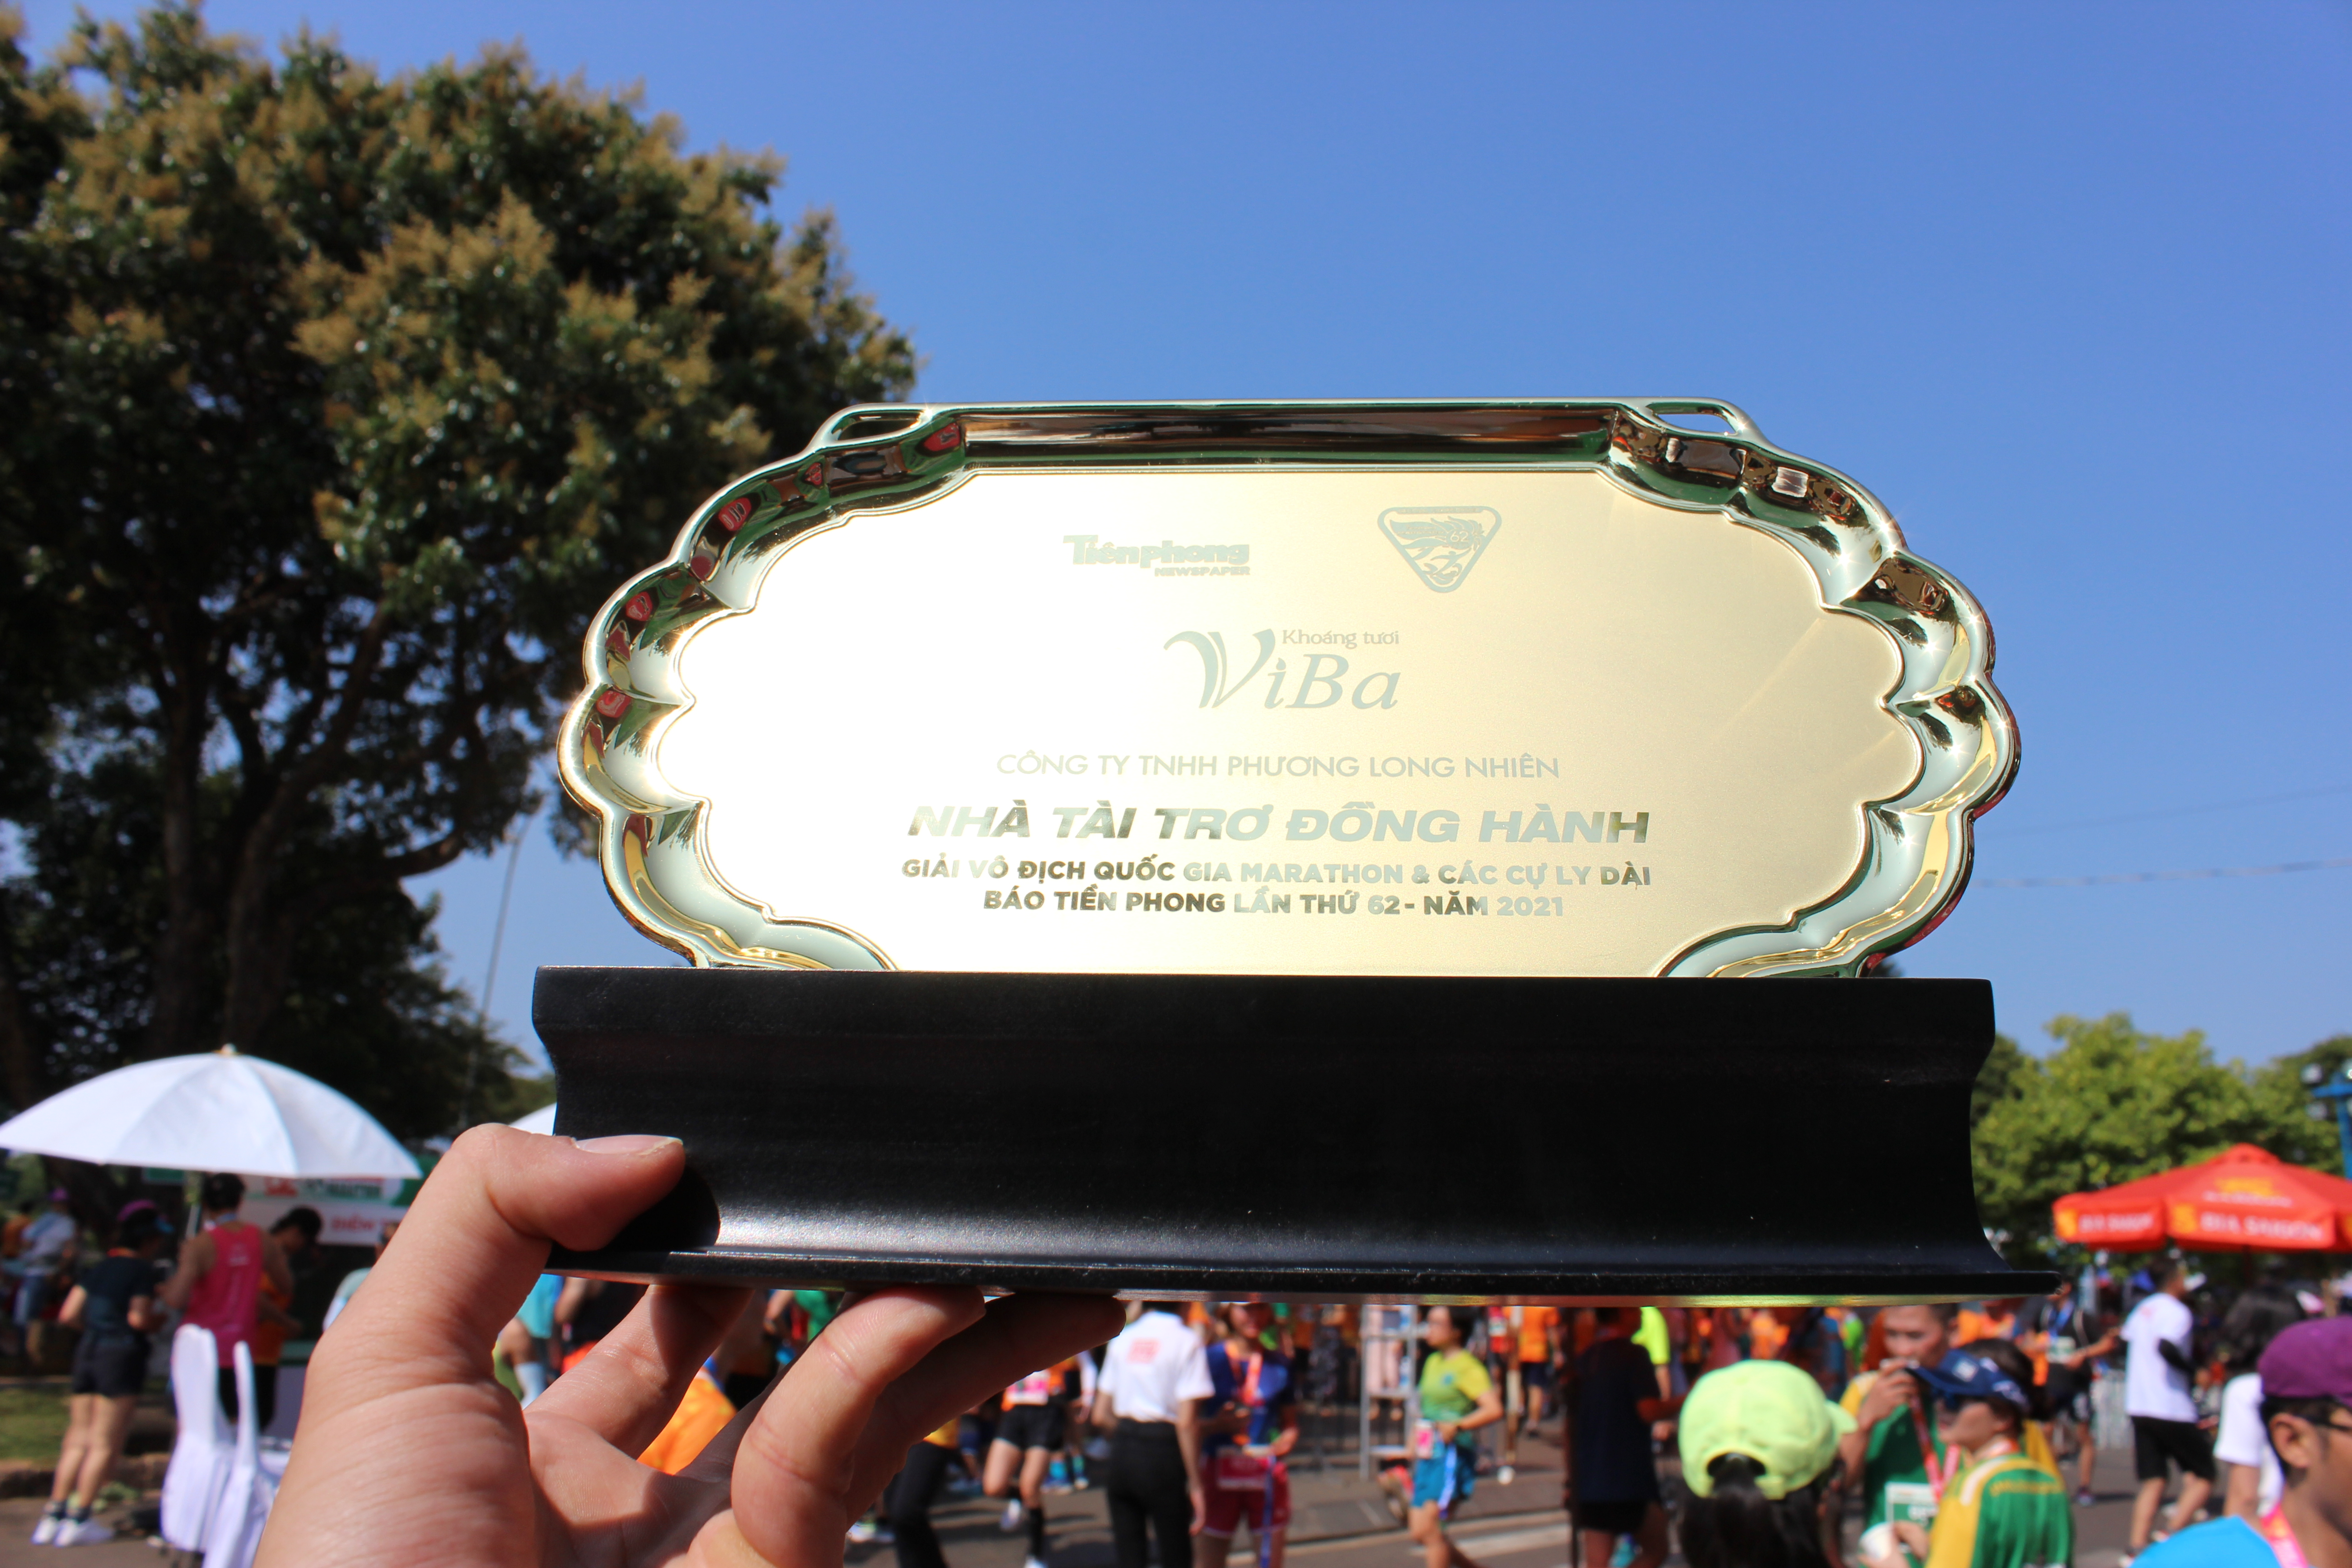 Khoáng tươi Viba đồng hành cùng giải Marathon Báo Tiền Phong 2021